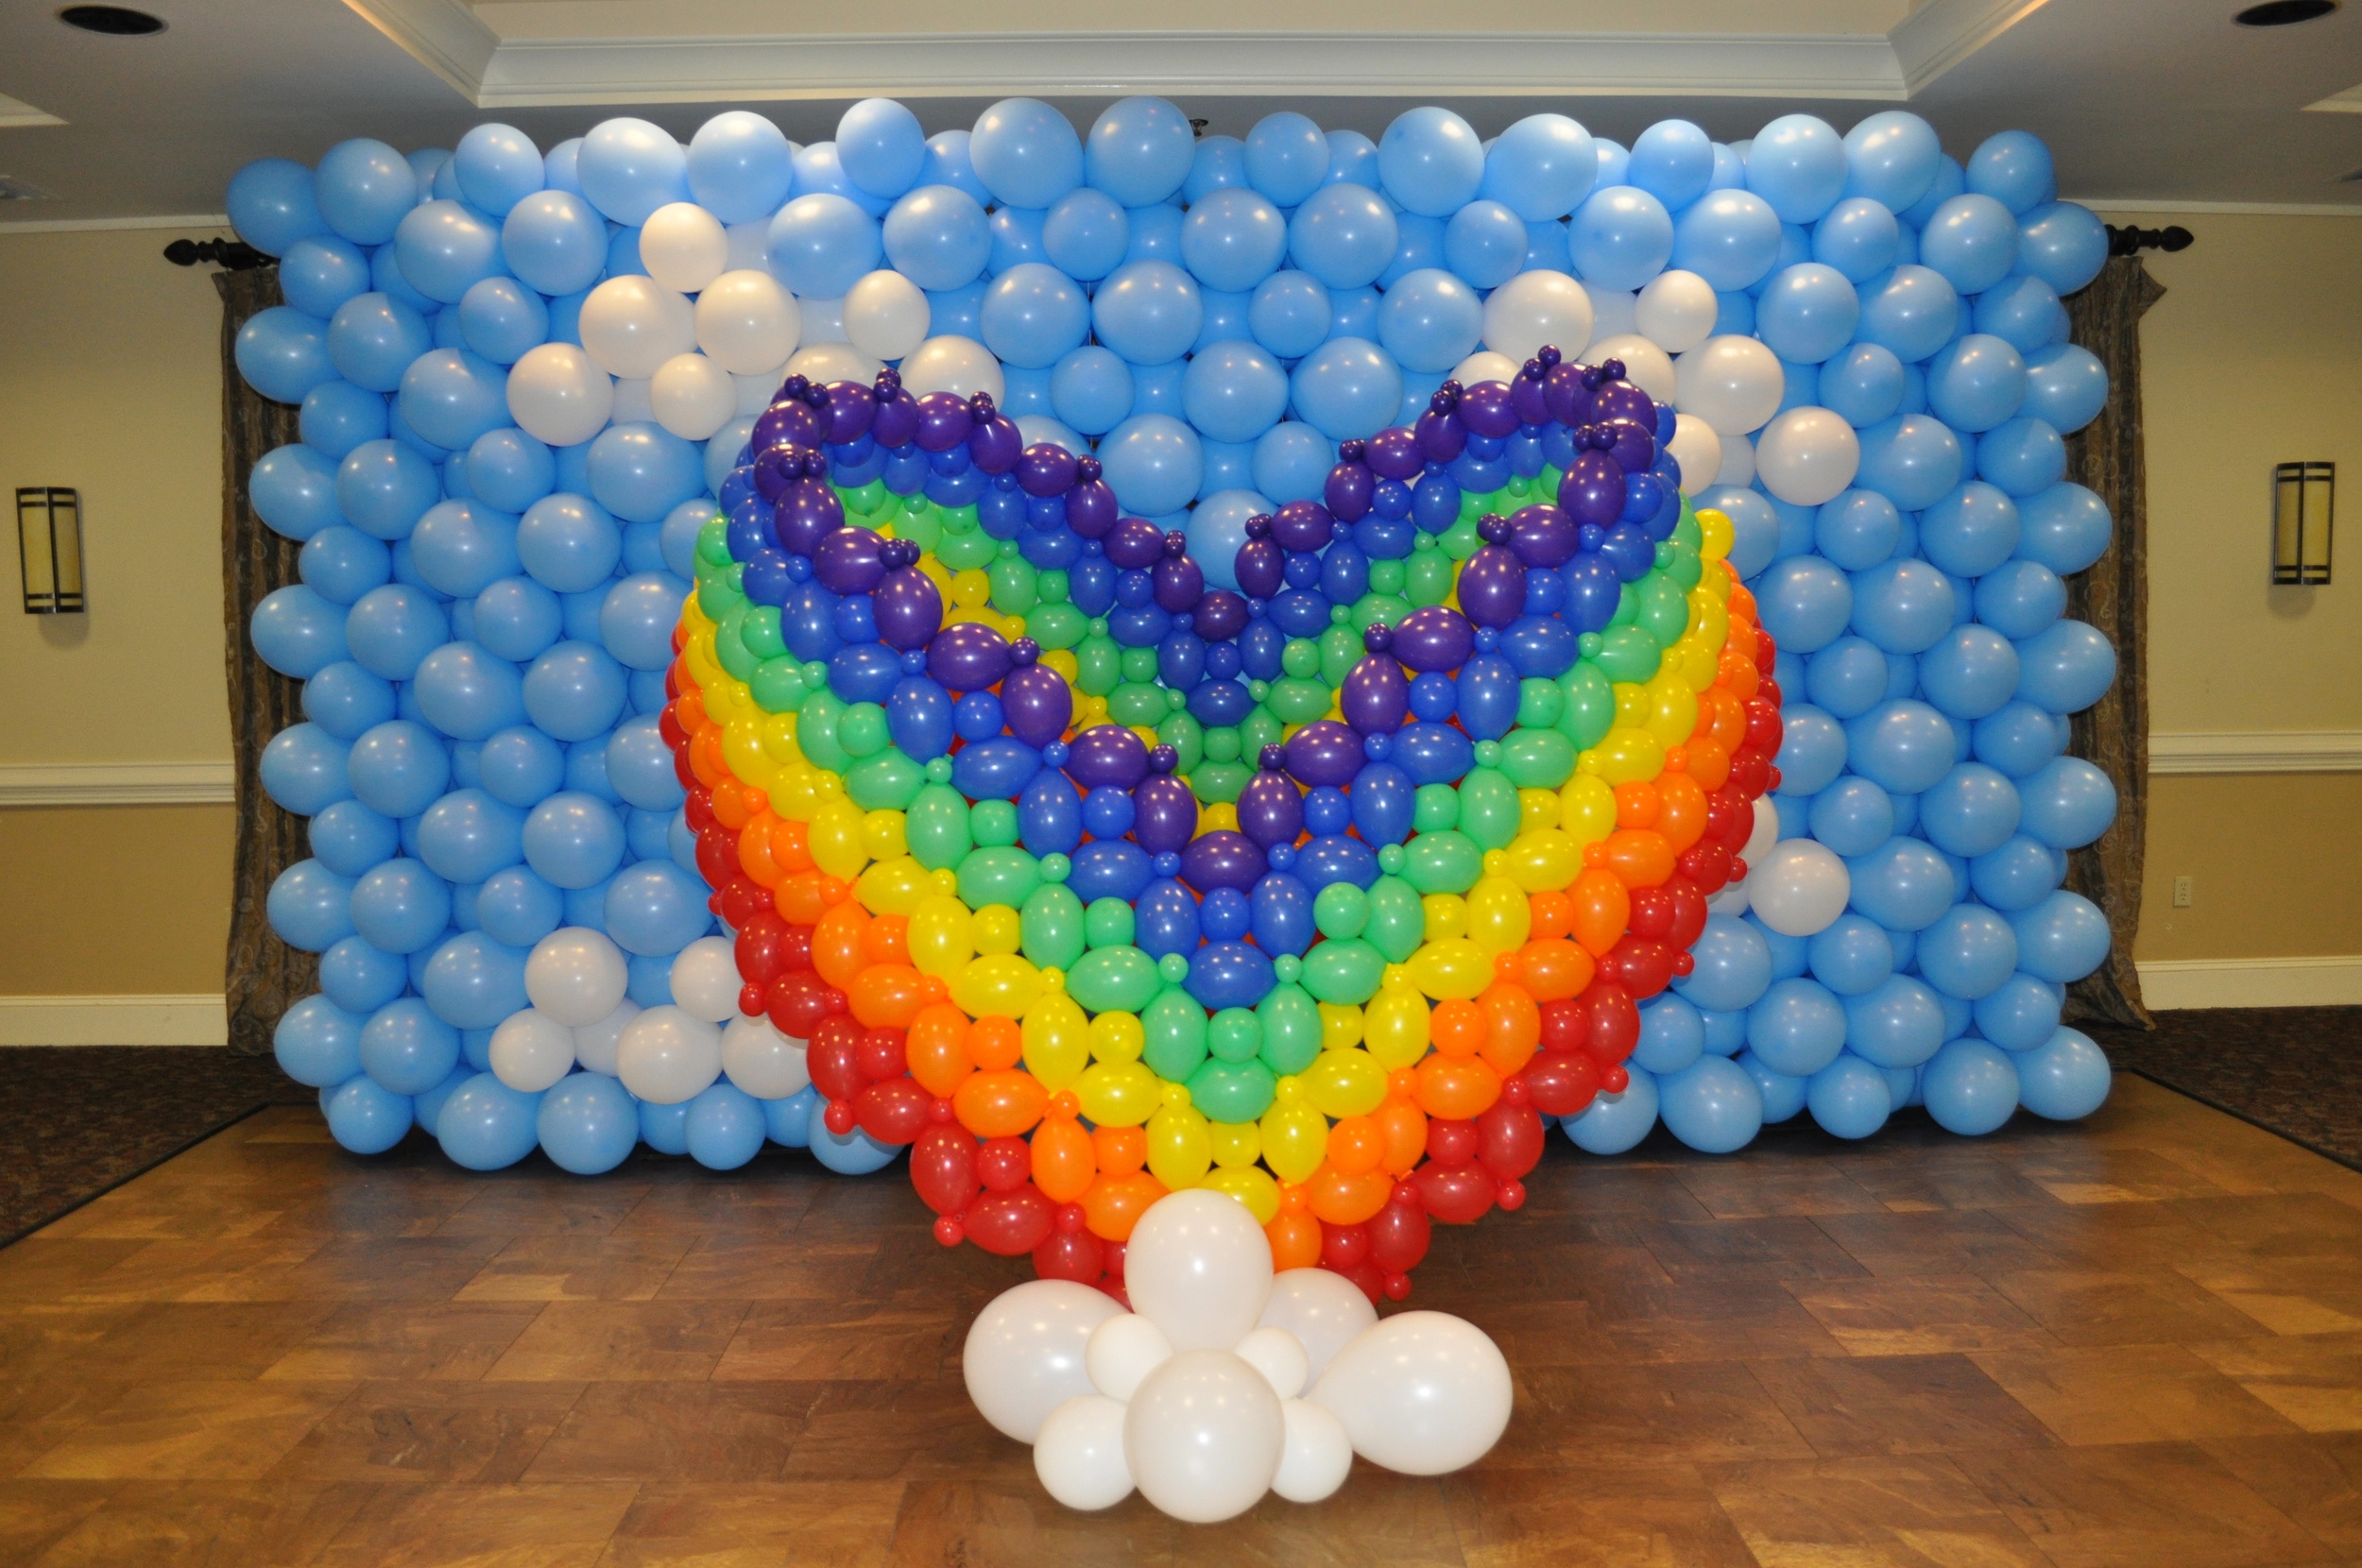 Rainbow heart balloon sculpture photo backdrop